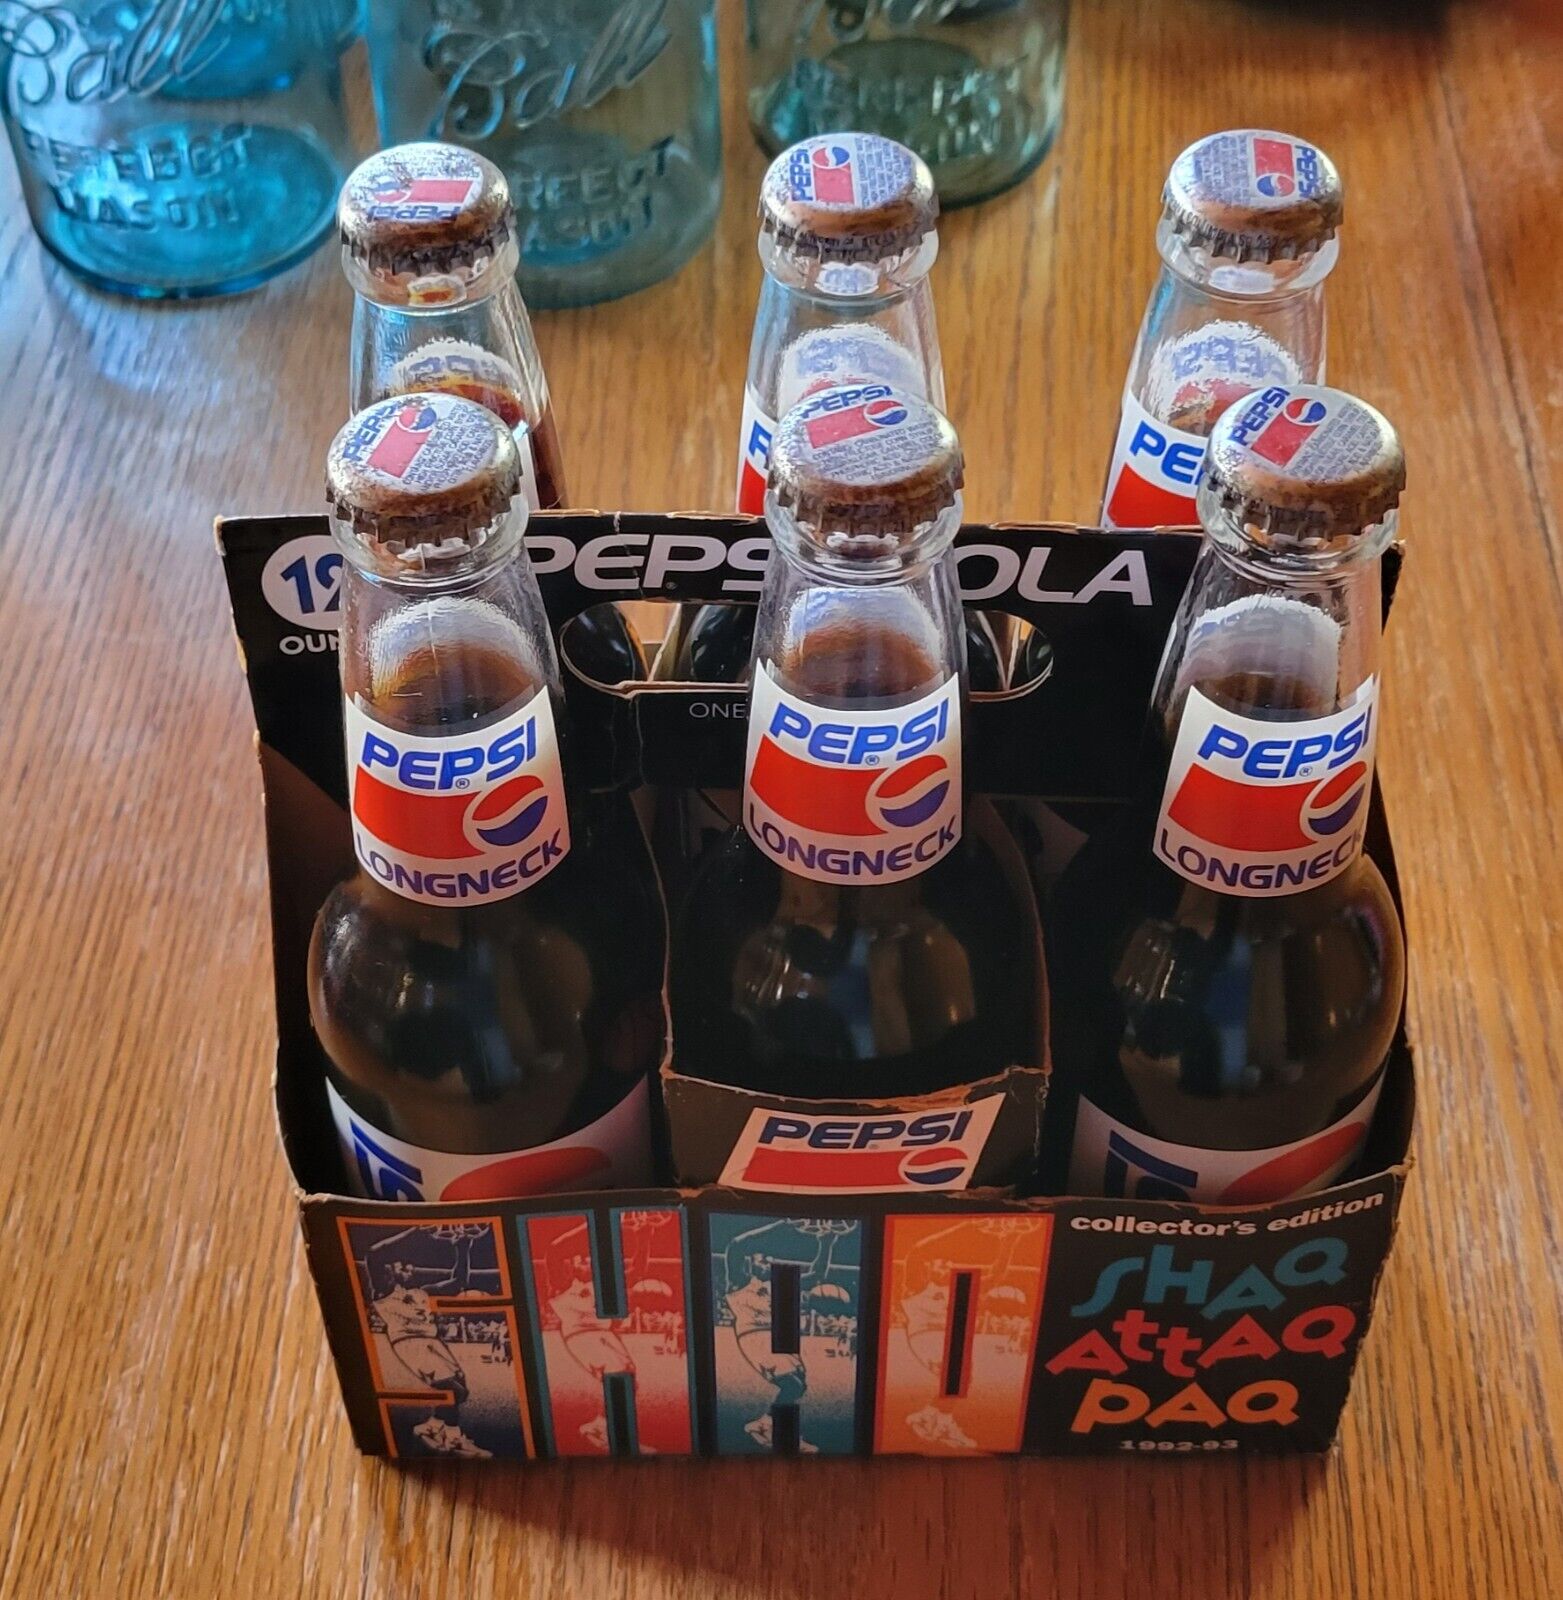 1992-93 Shaq Attaq Paq 6 Pack Pepsi Bottles w/ Carrier